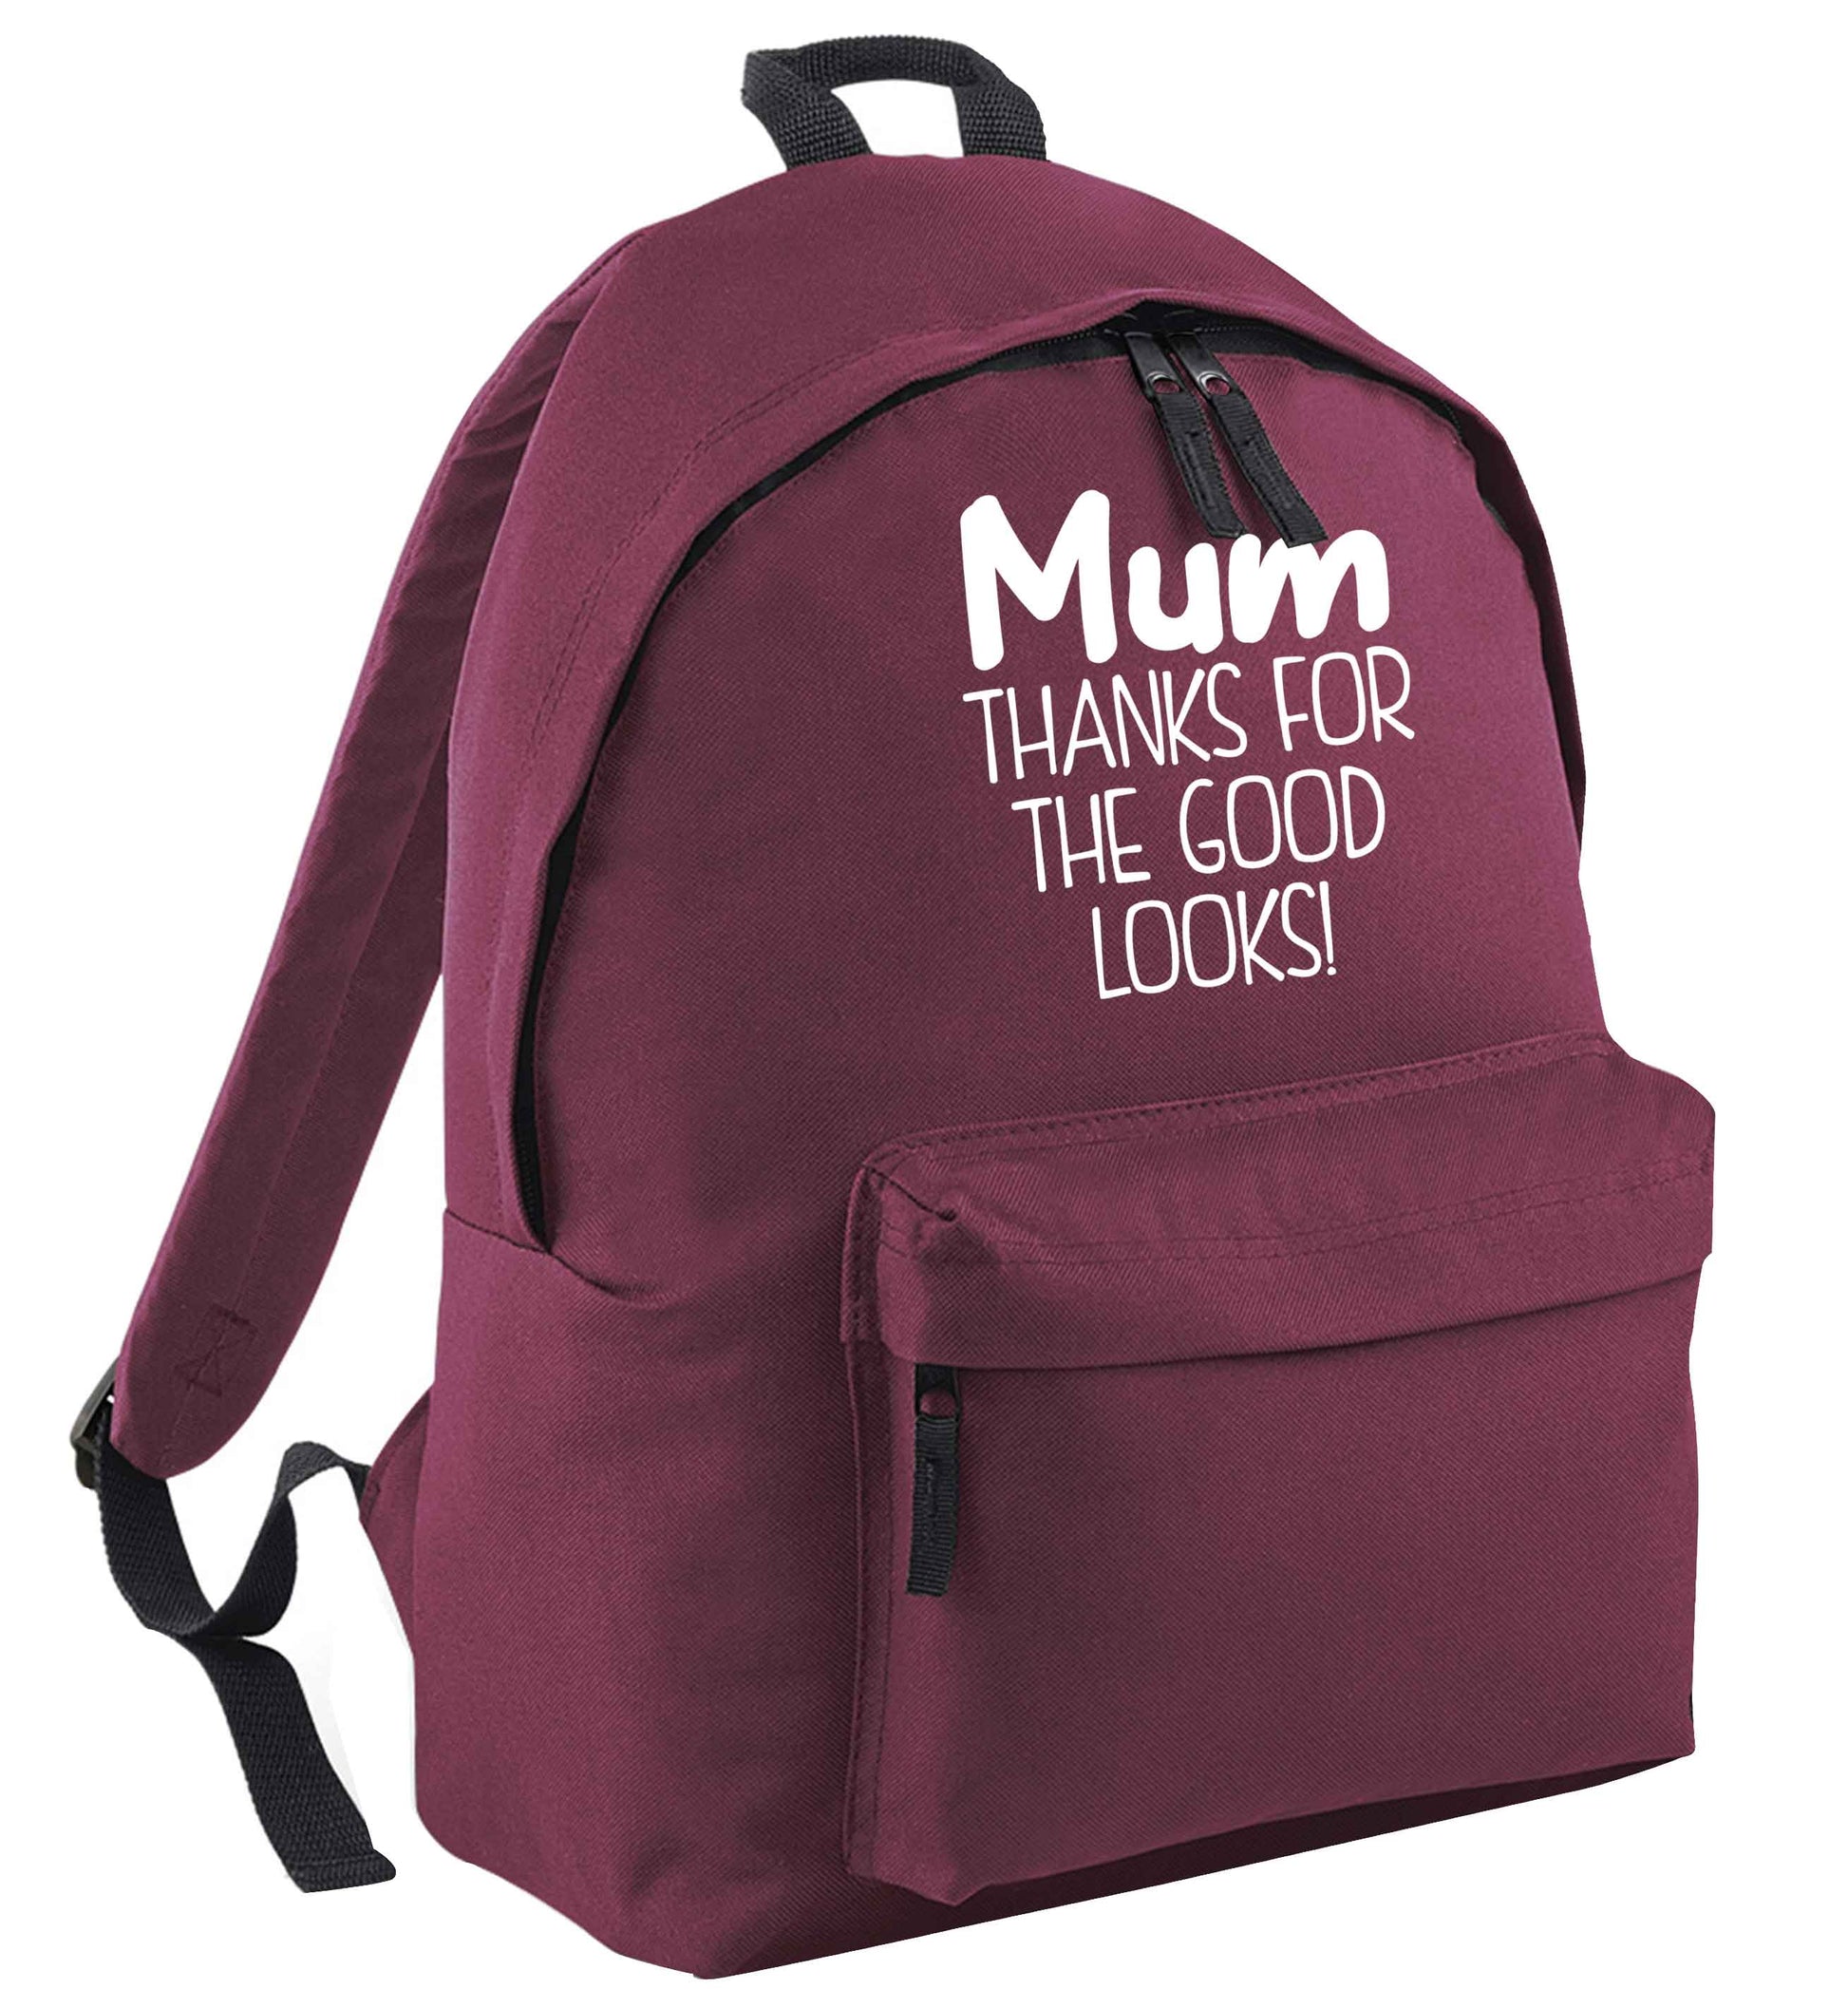 Mum thanks for the good looks! black childrens backpack